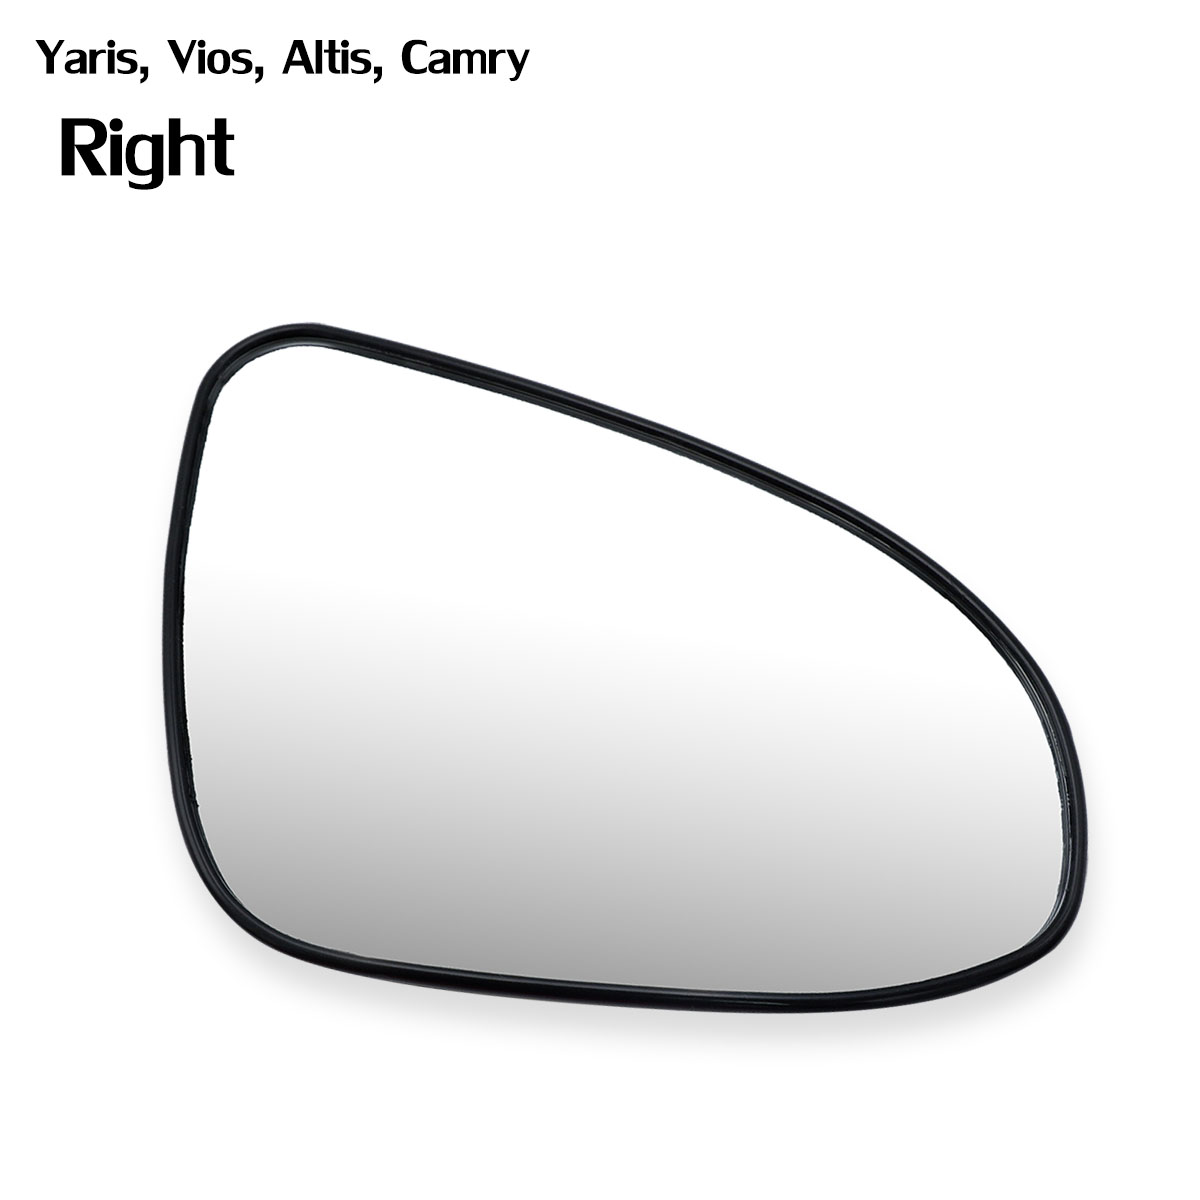 เนื้อเลนส์กระจก ข้าง ขวา ใส่ Toyota Vios Altis Yaris Camry ปี 2014 - 2019 Right Wing Side Door Mirror Glass Len Yaris Vios Altis Camry Toyota มีบริการเก็บเงินปลายทาง